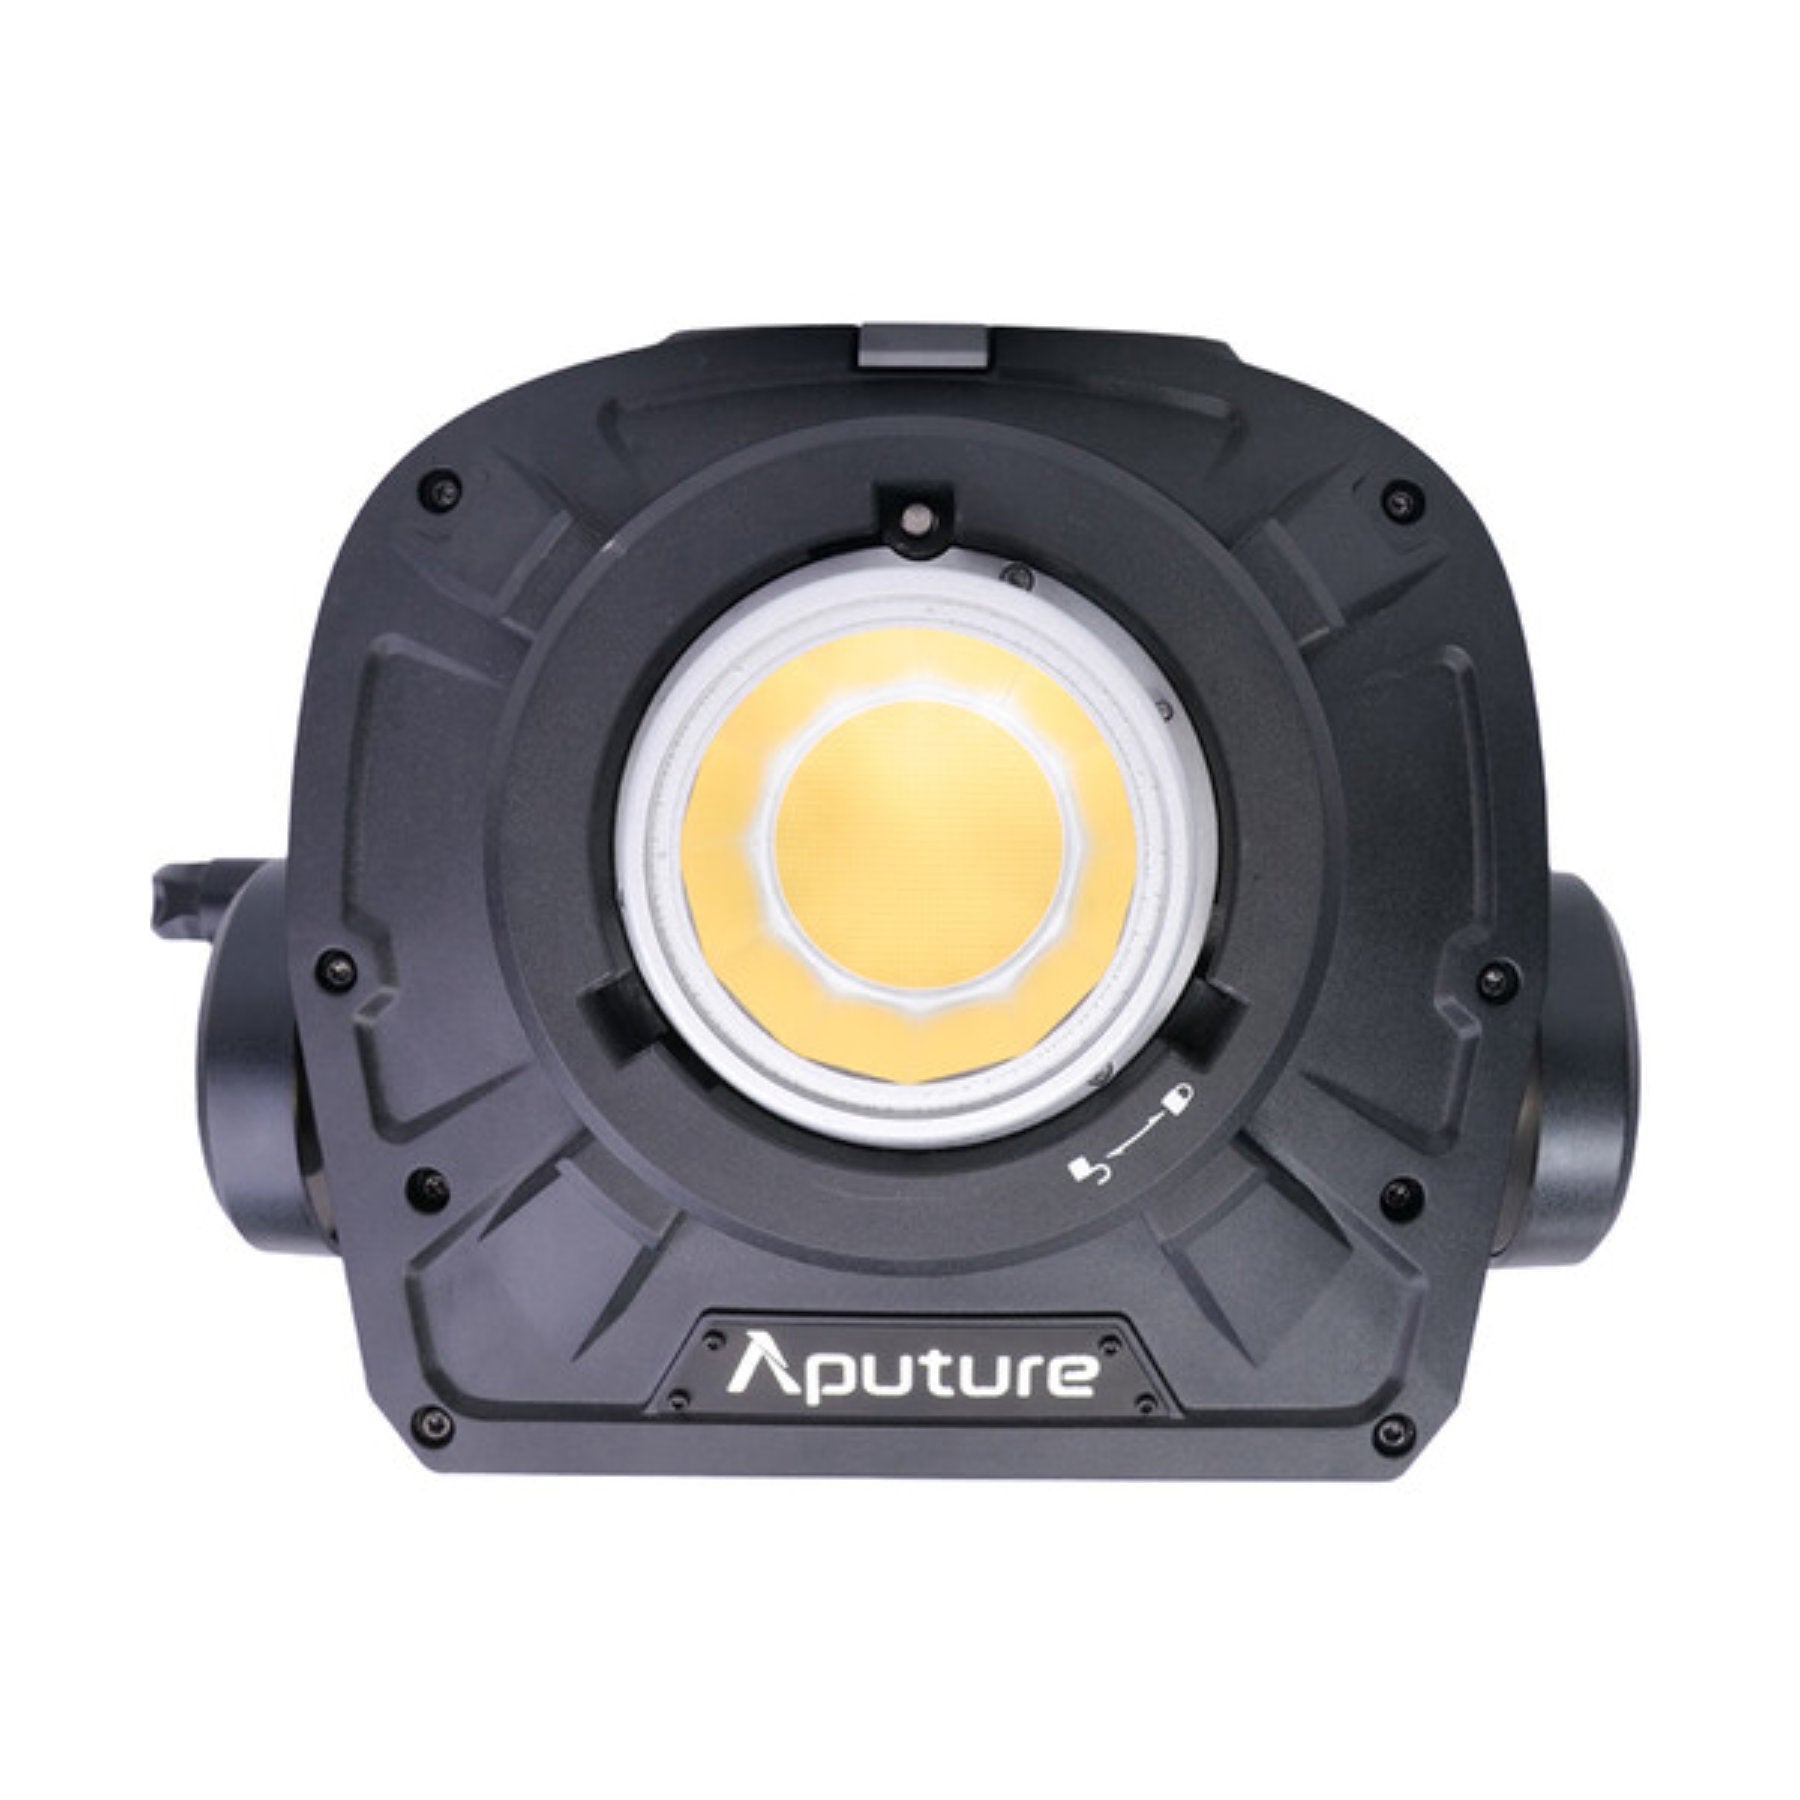 Hire Aputure LS 1200d Pro LED Light Kit at Topic Rentals